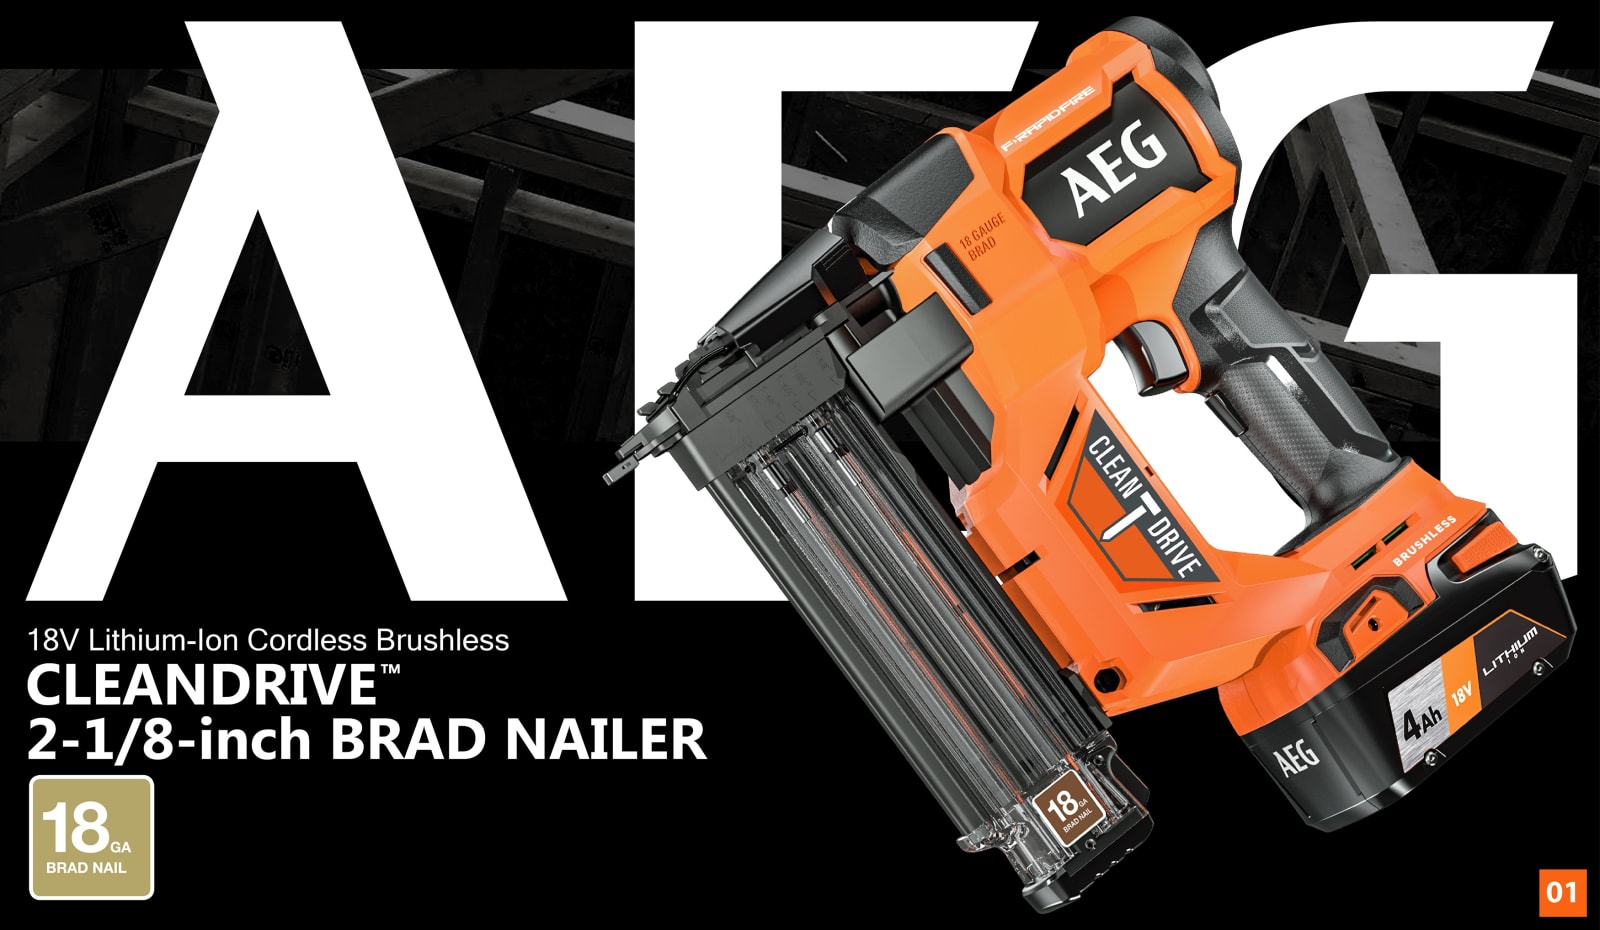 AEG 18V Brushless 18Ga C1 Brad Nailer (A18FCN18GA0) in action 